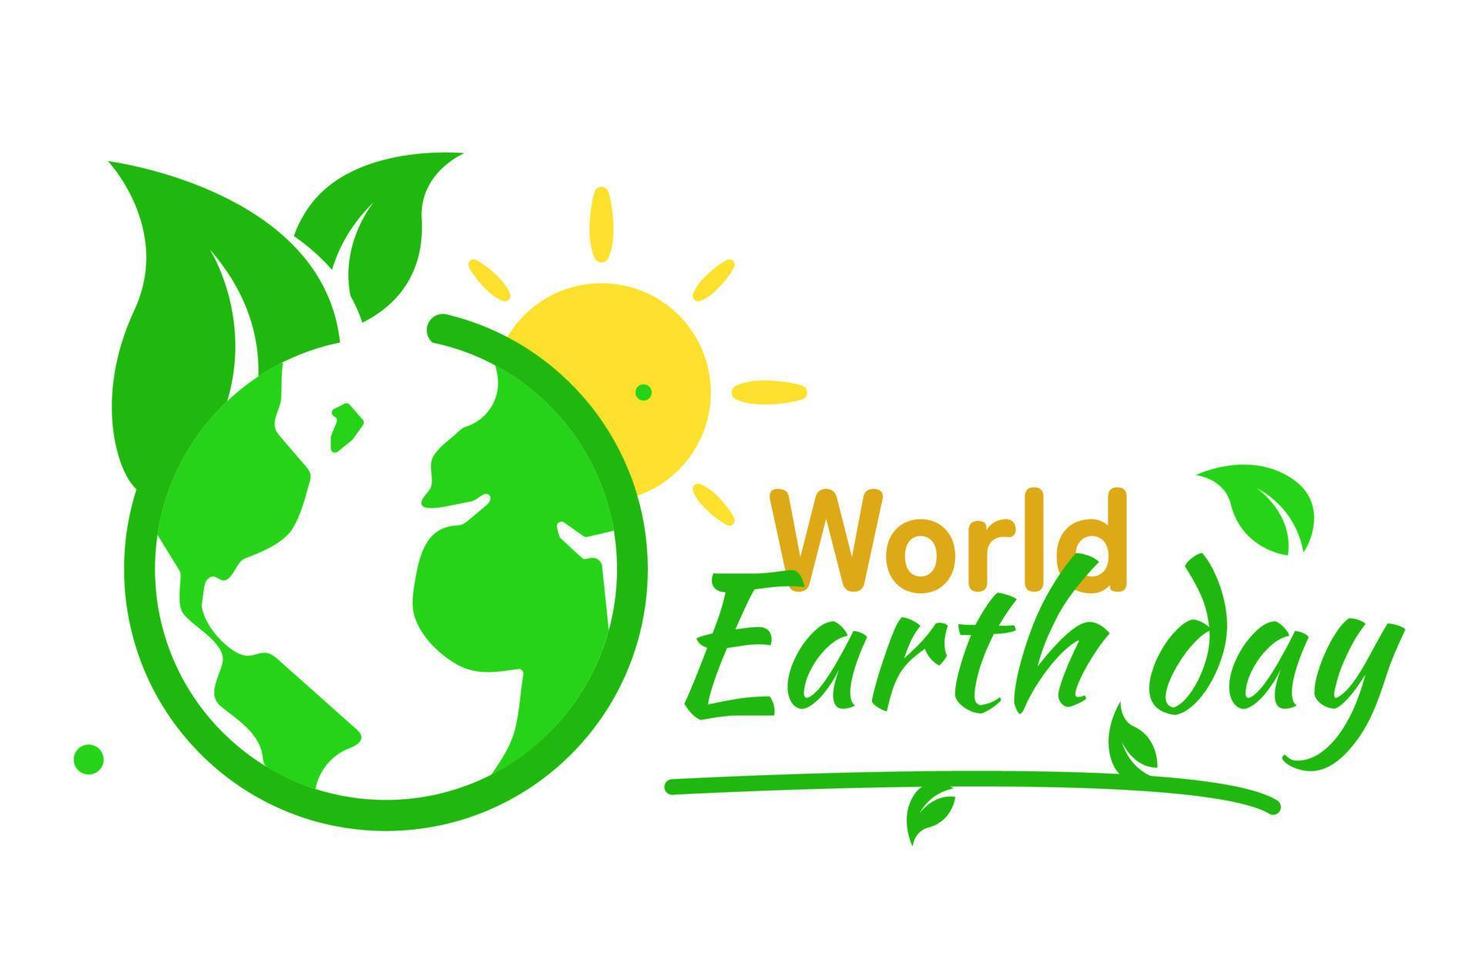 groen wereld, aarde met blad logo, ecologie vriendelijk milieu concept illustratie vlak ontwerp vector eps10. modern grafisch element voor infografisch, icoon, poster, banier